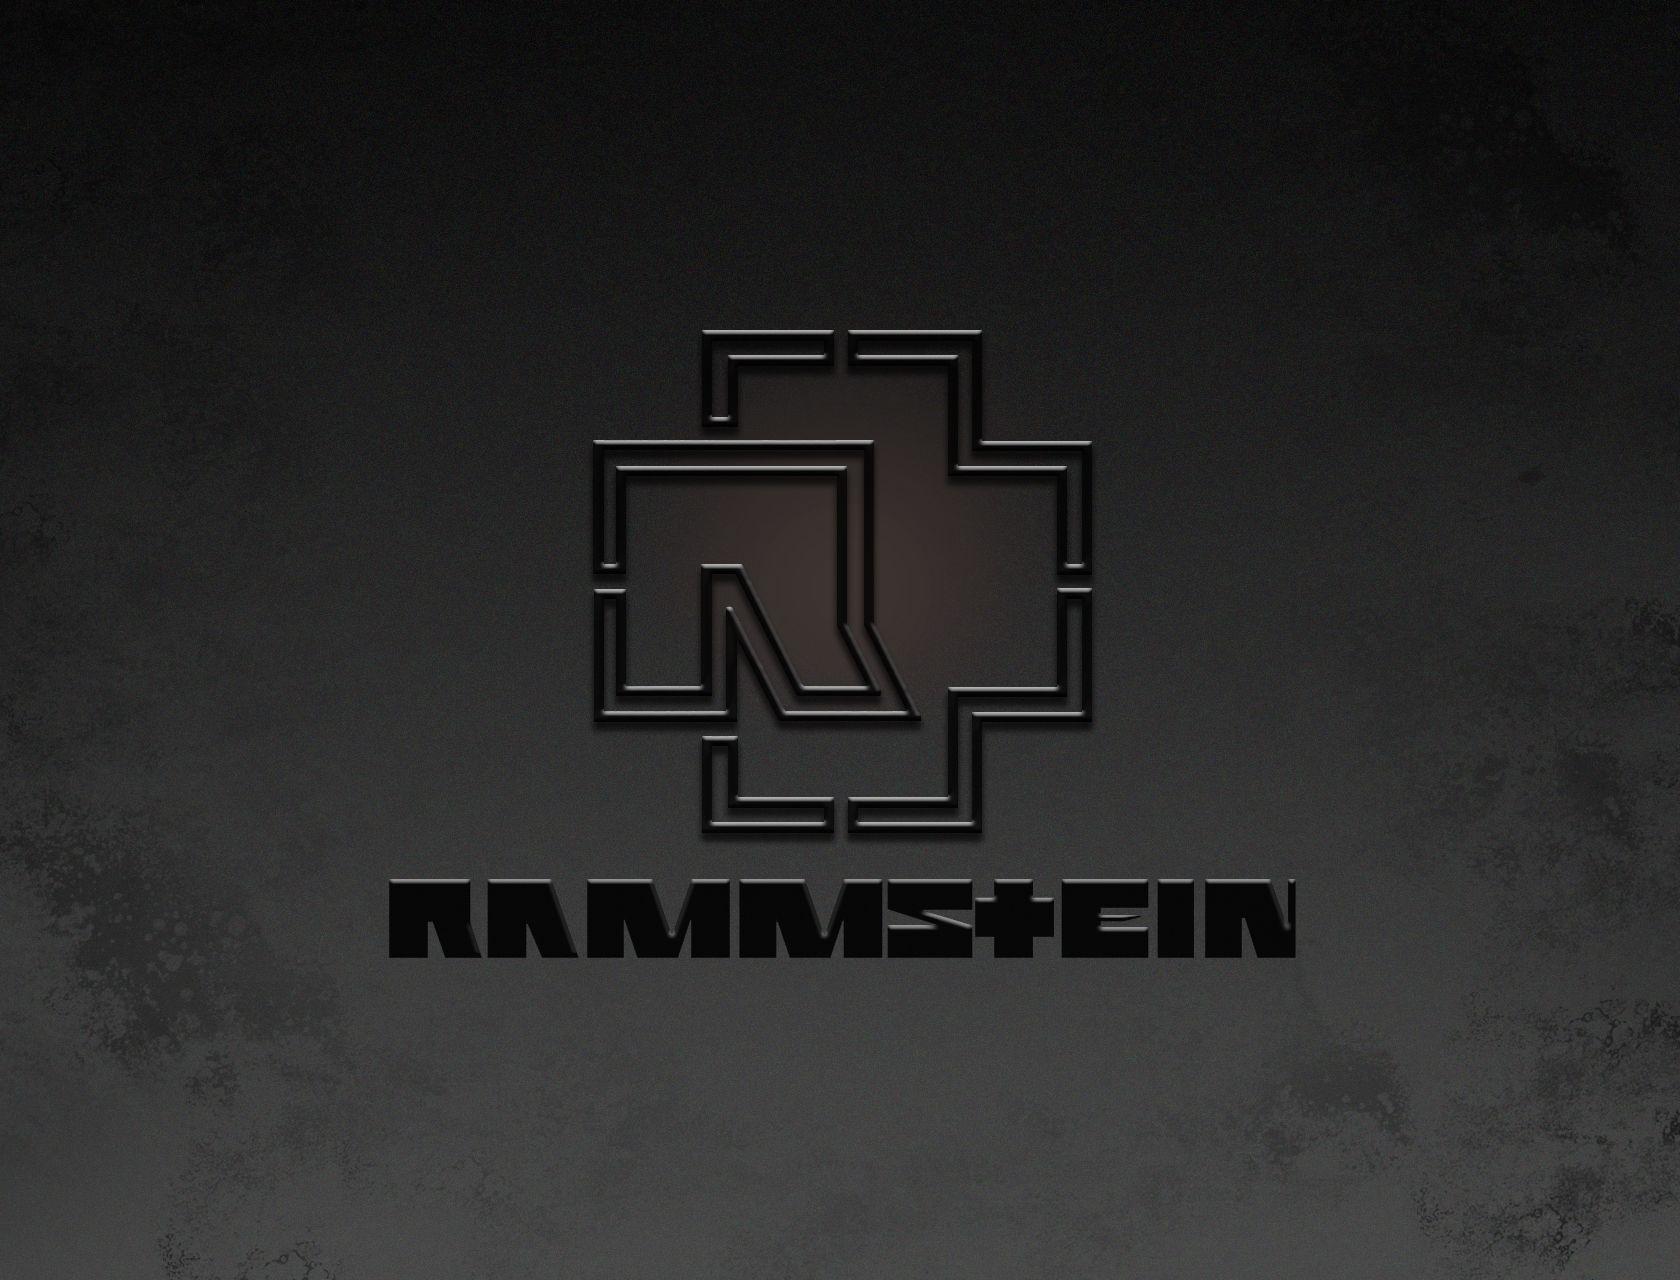 Rammstein Wallpaper, 48 Full HQ Definition Rammstein Background